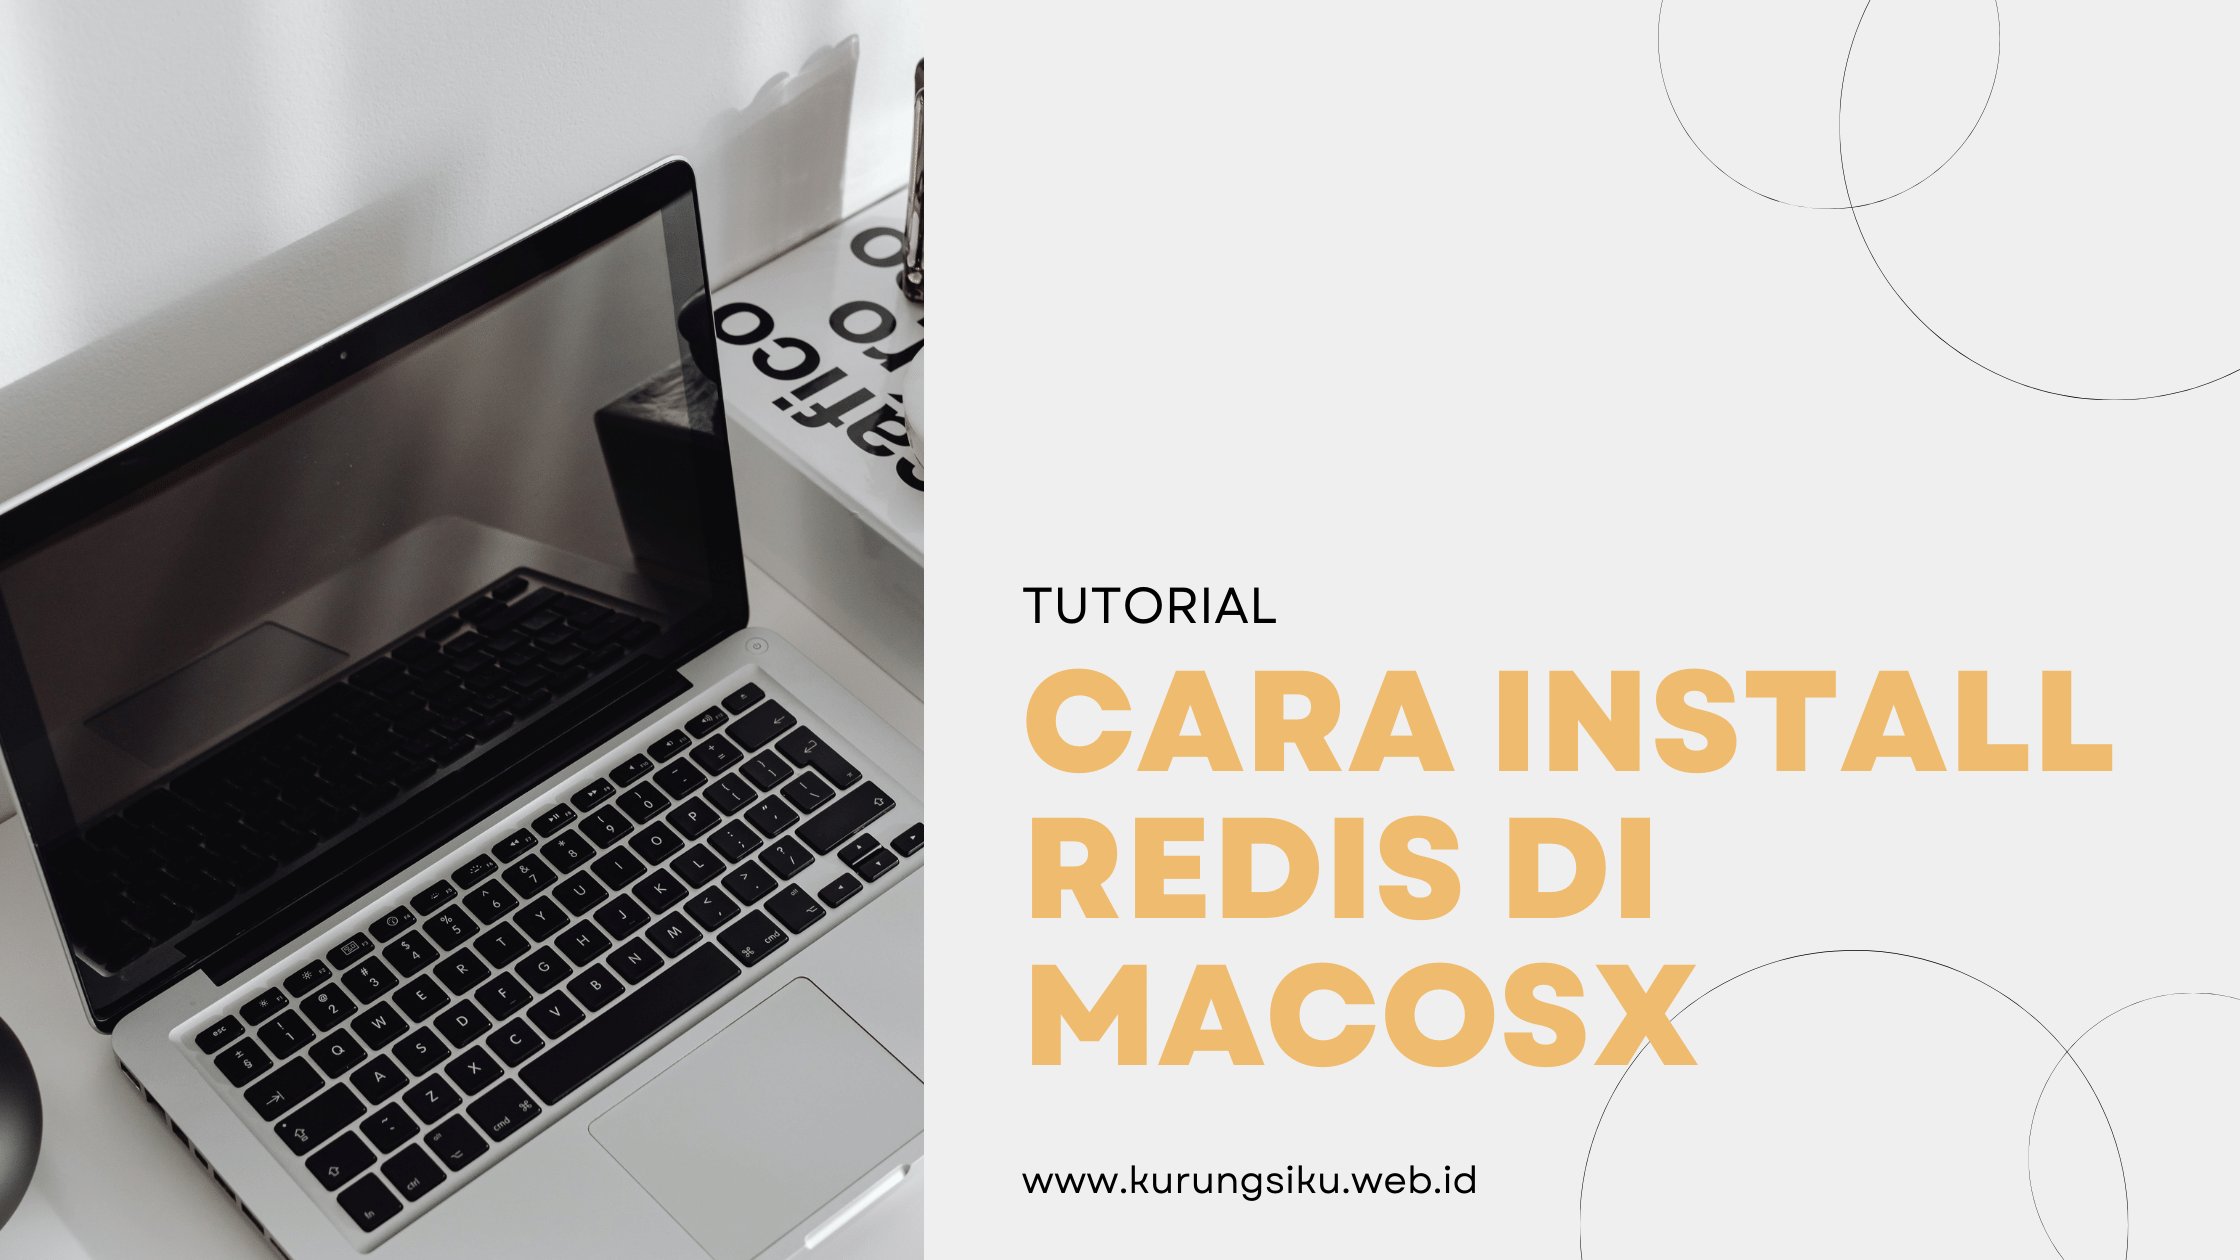 Instalasi Redis di MacOS X